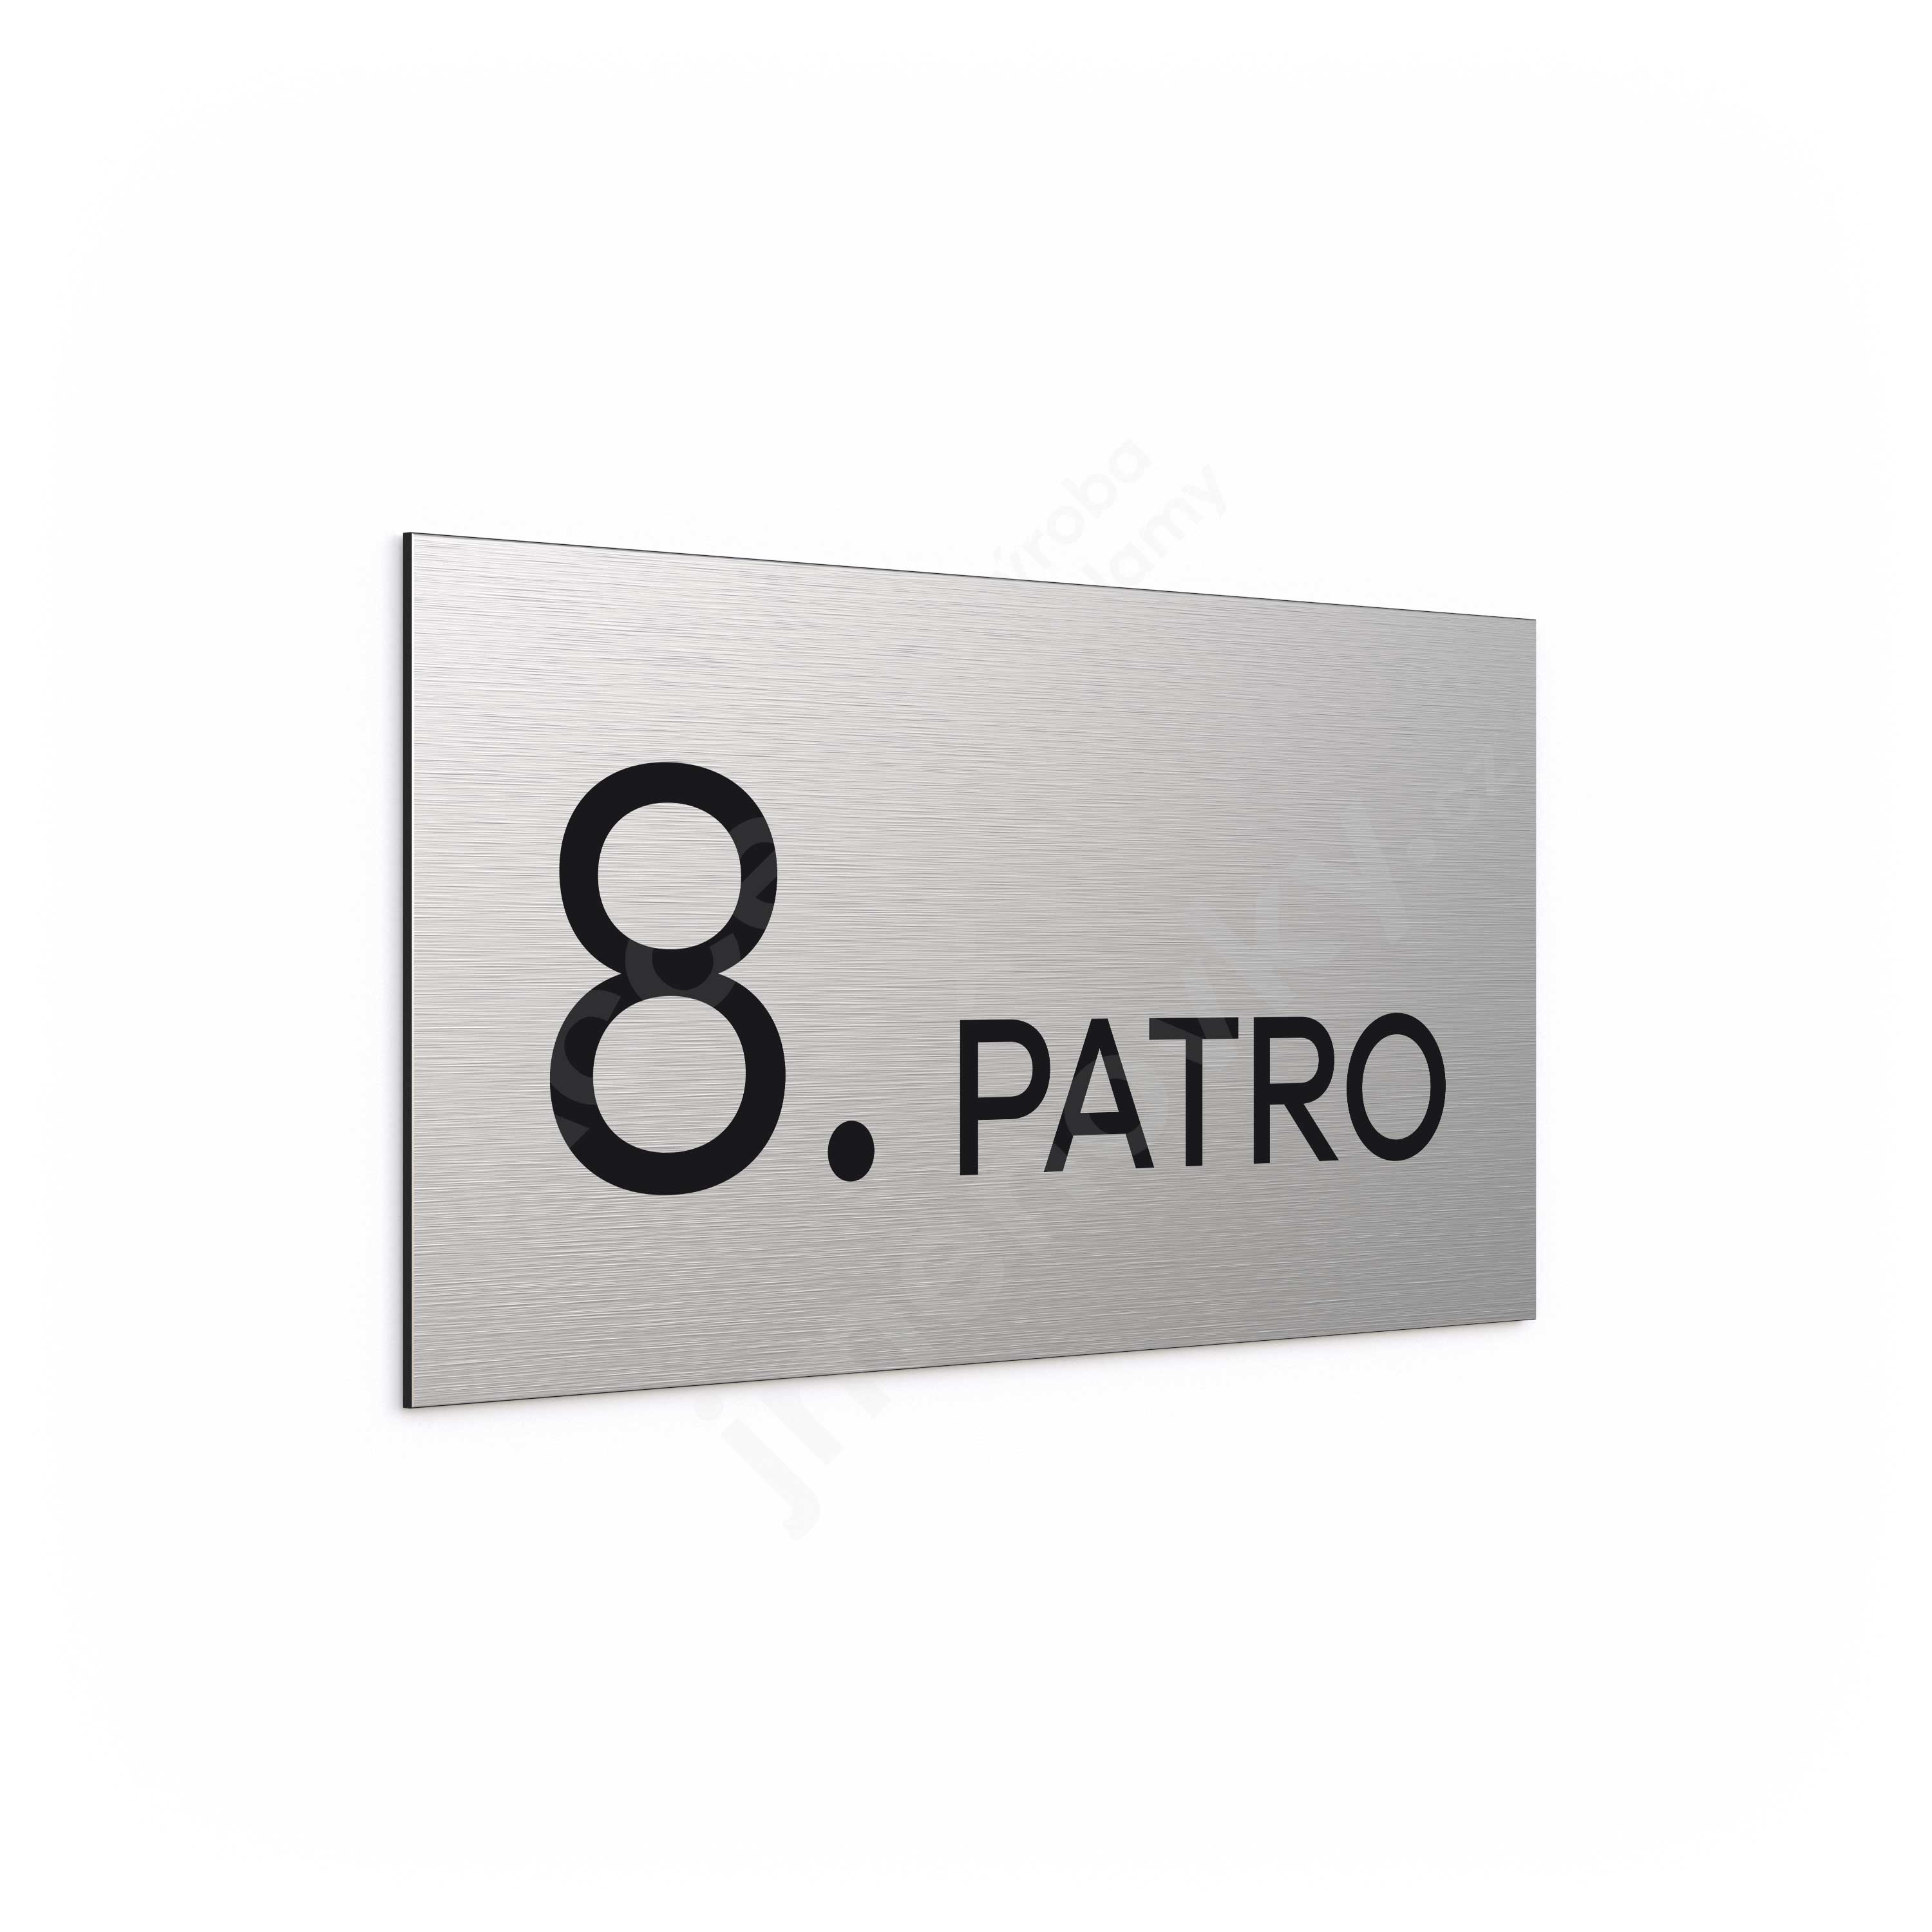 Označení podlaží "8. PATRO" - stříbrná tabulka - černý popis